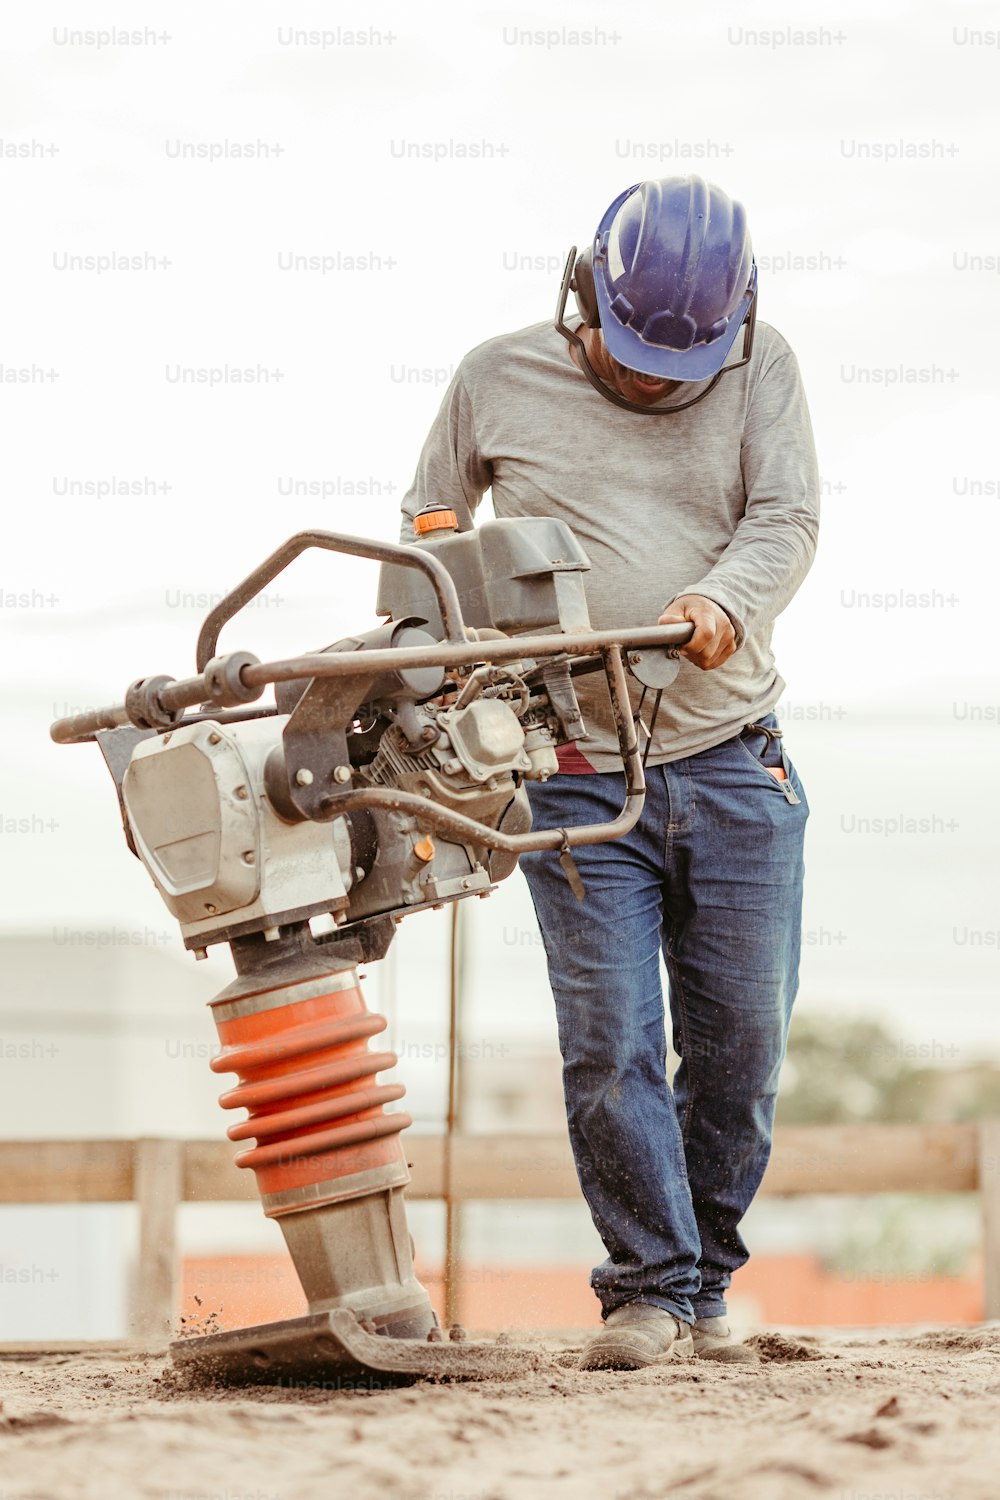 Un homme portant un casque de sécurité travaillant sur une machine